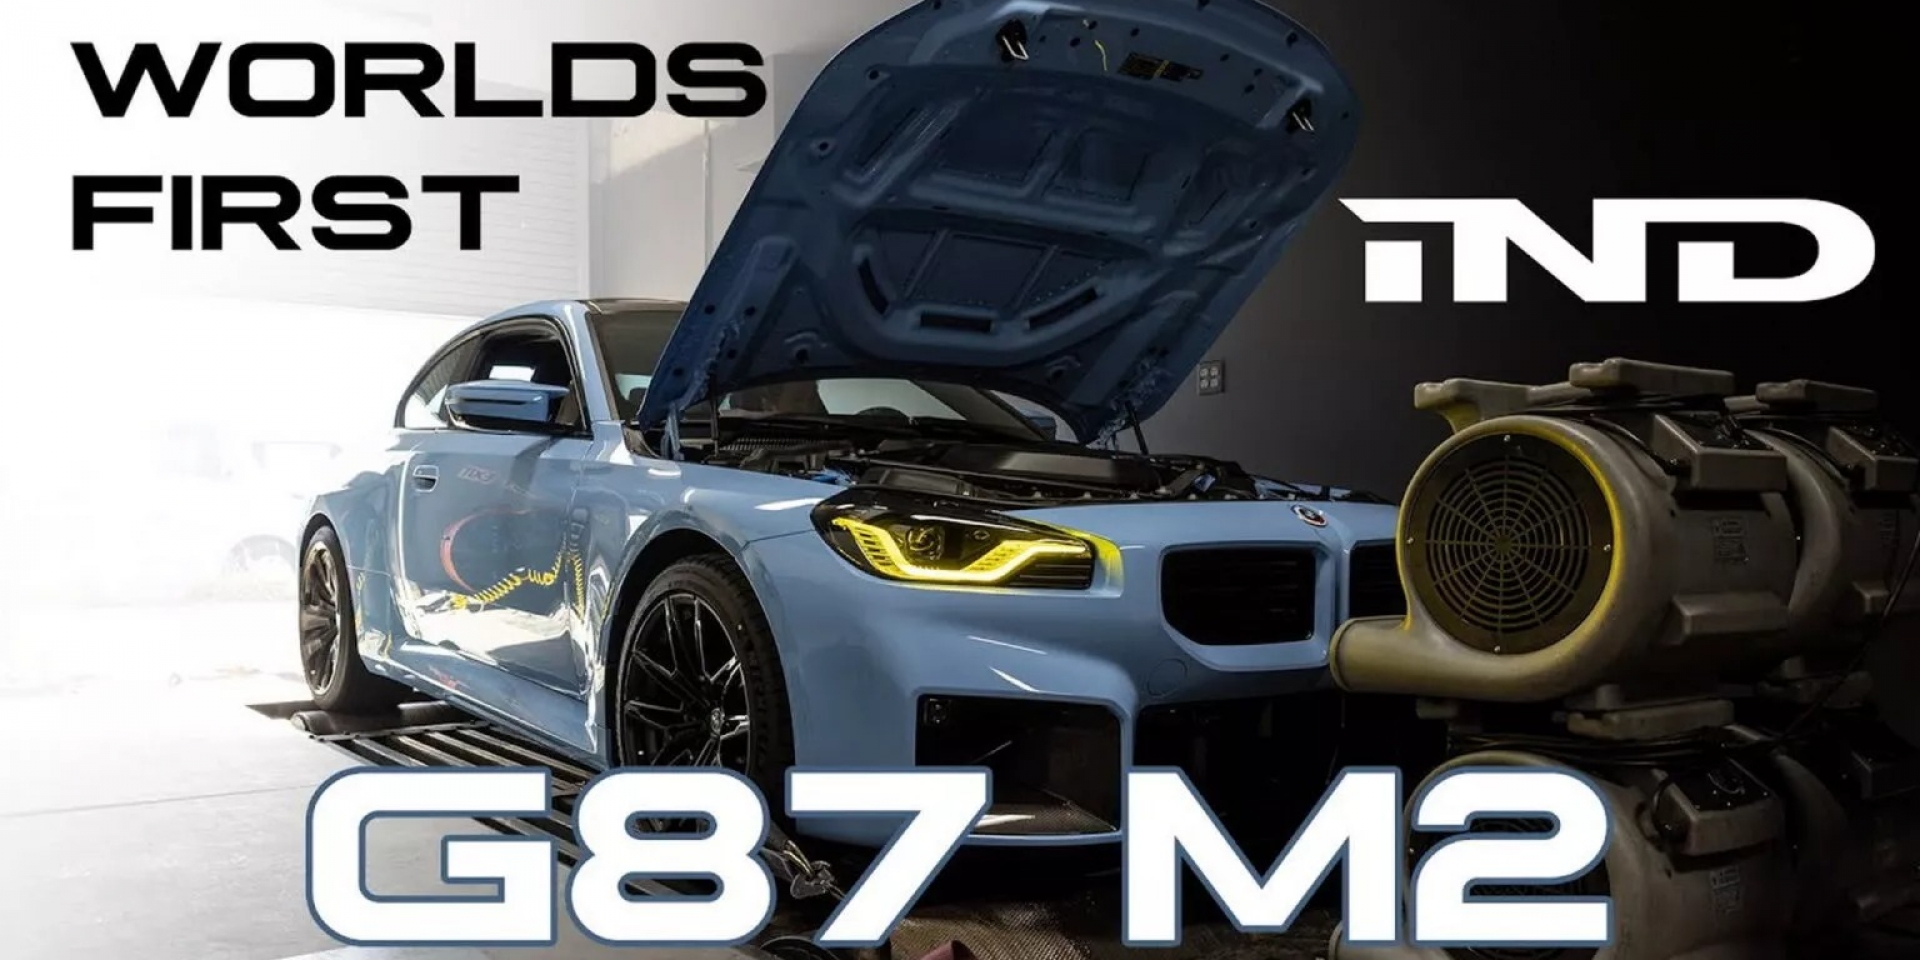 這種欺騙我喜歡！BMW G87 M2馬力機實測表現比原廠還猛